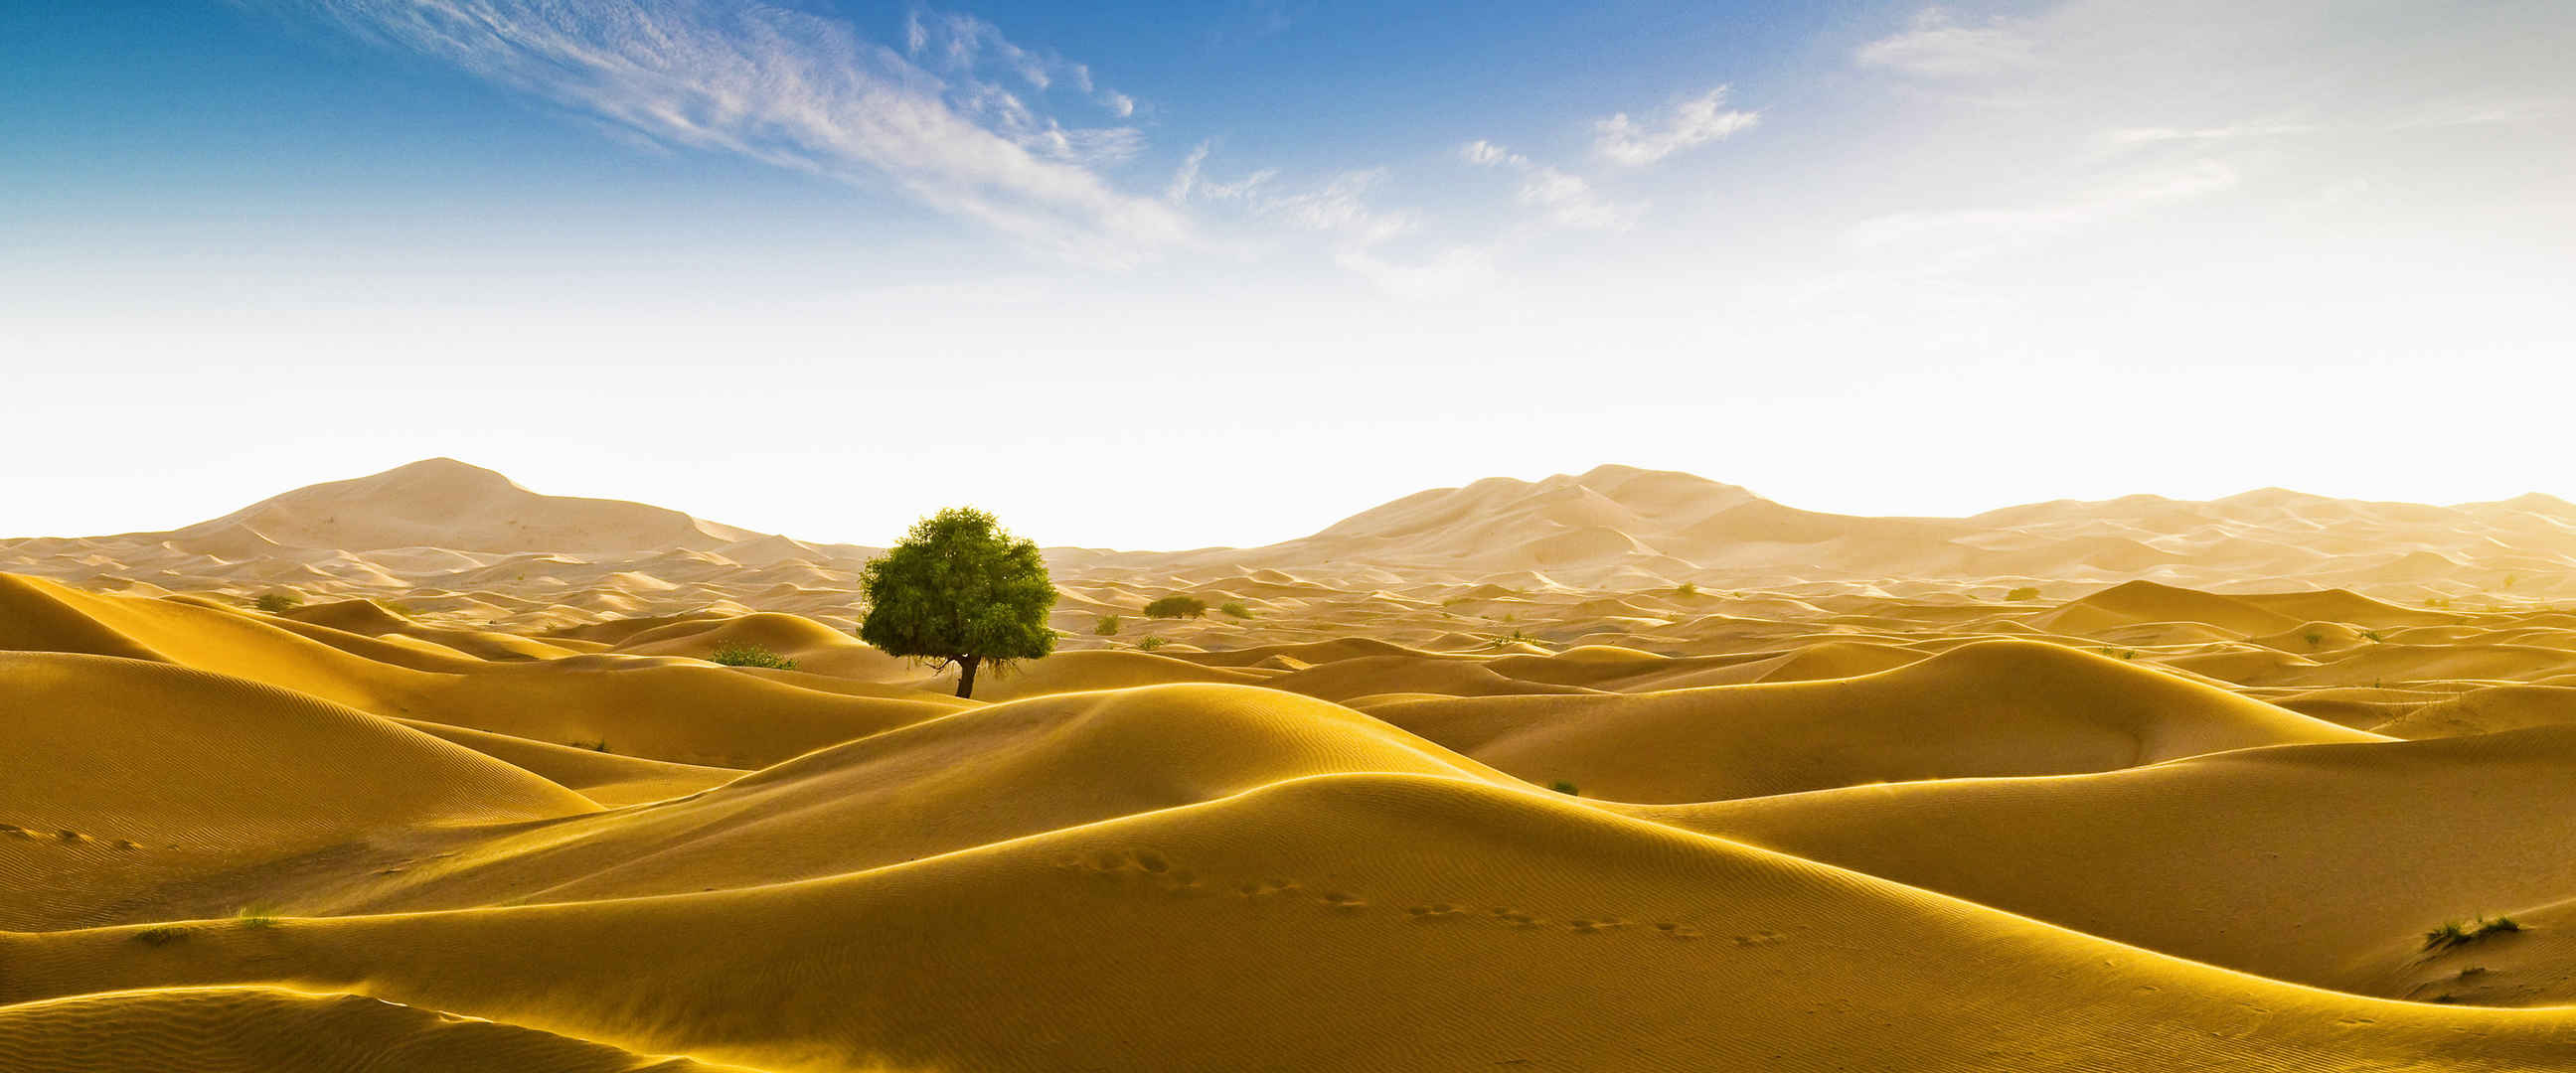 沙漠孤独树壁纸